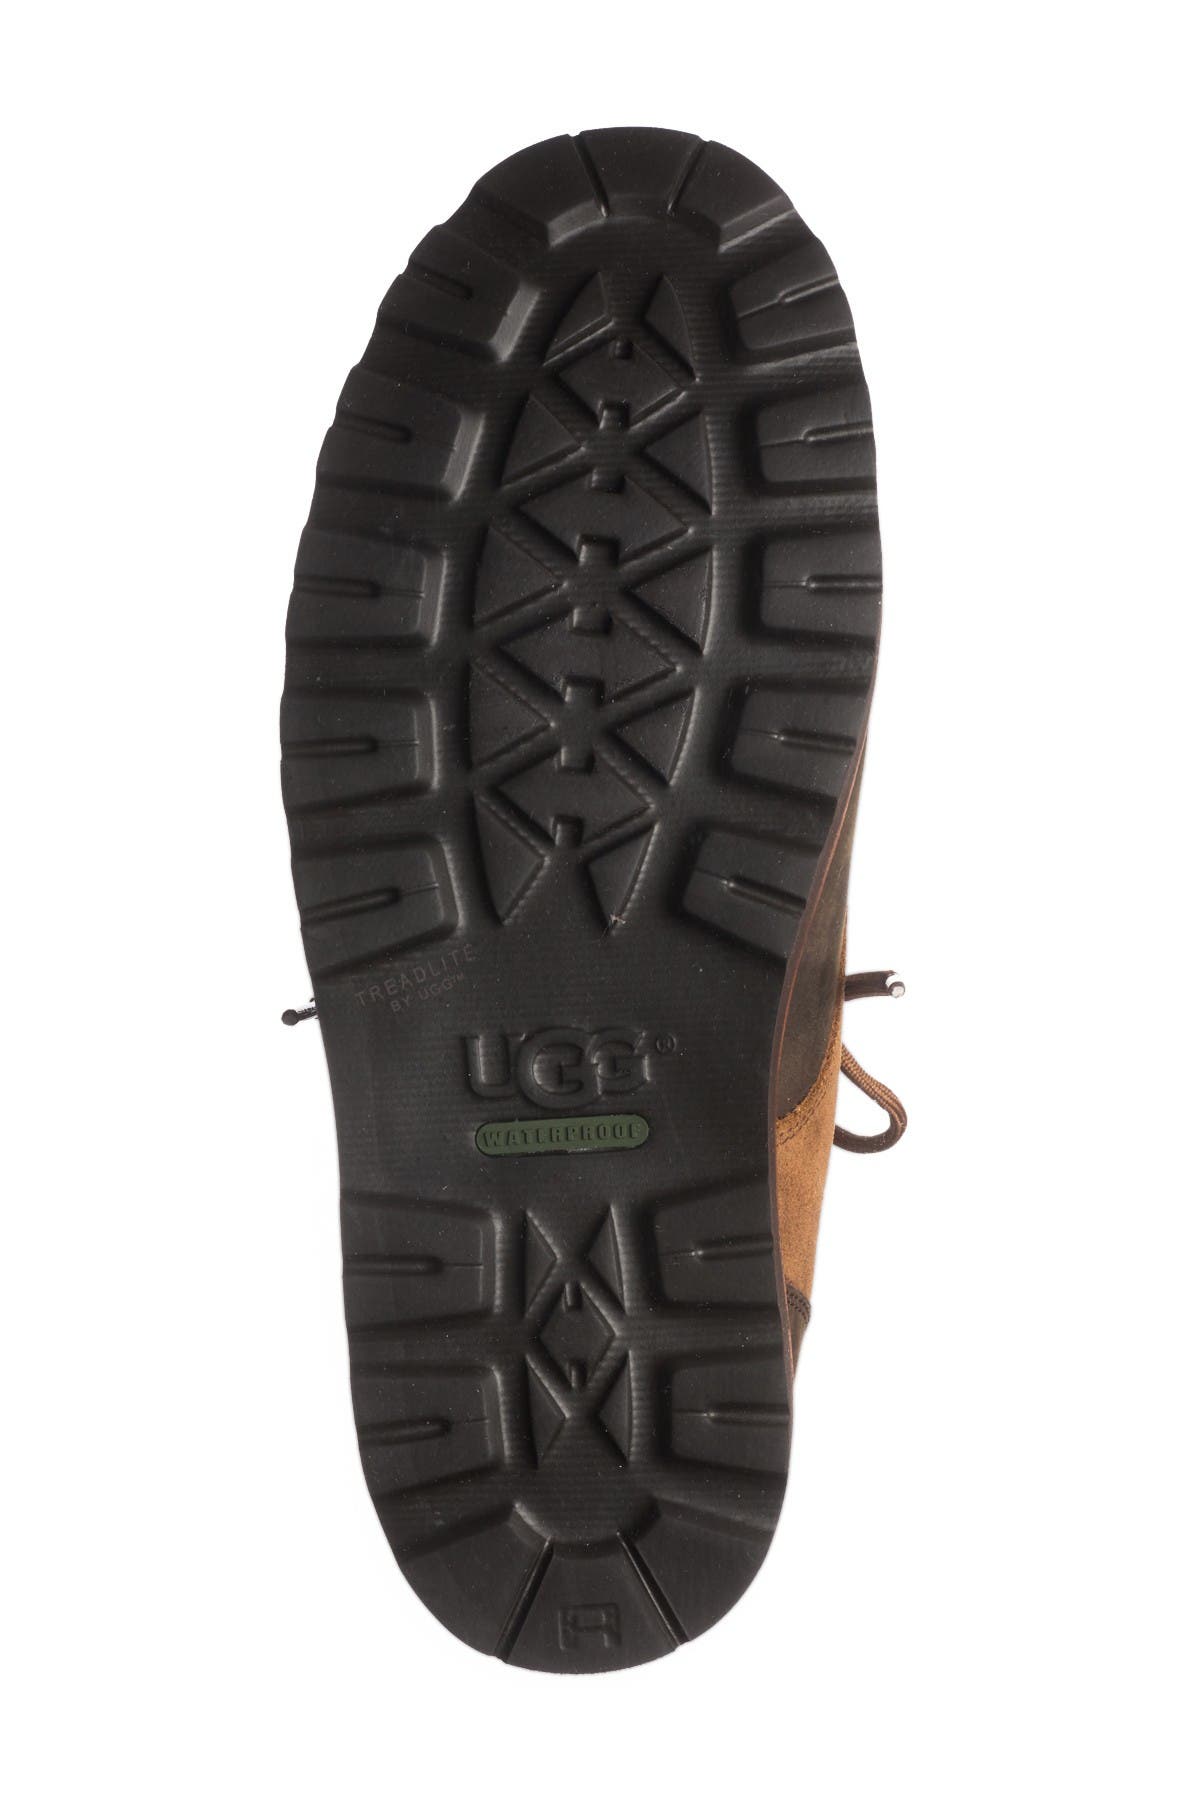 hannen plain toe waterproof boot with genuine shearling